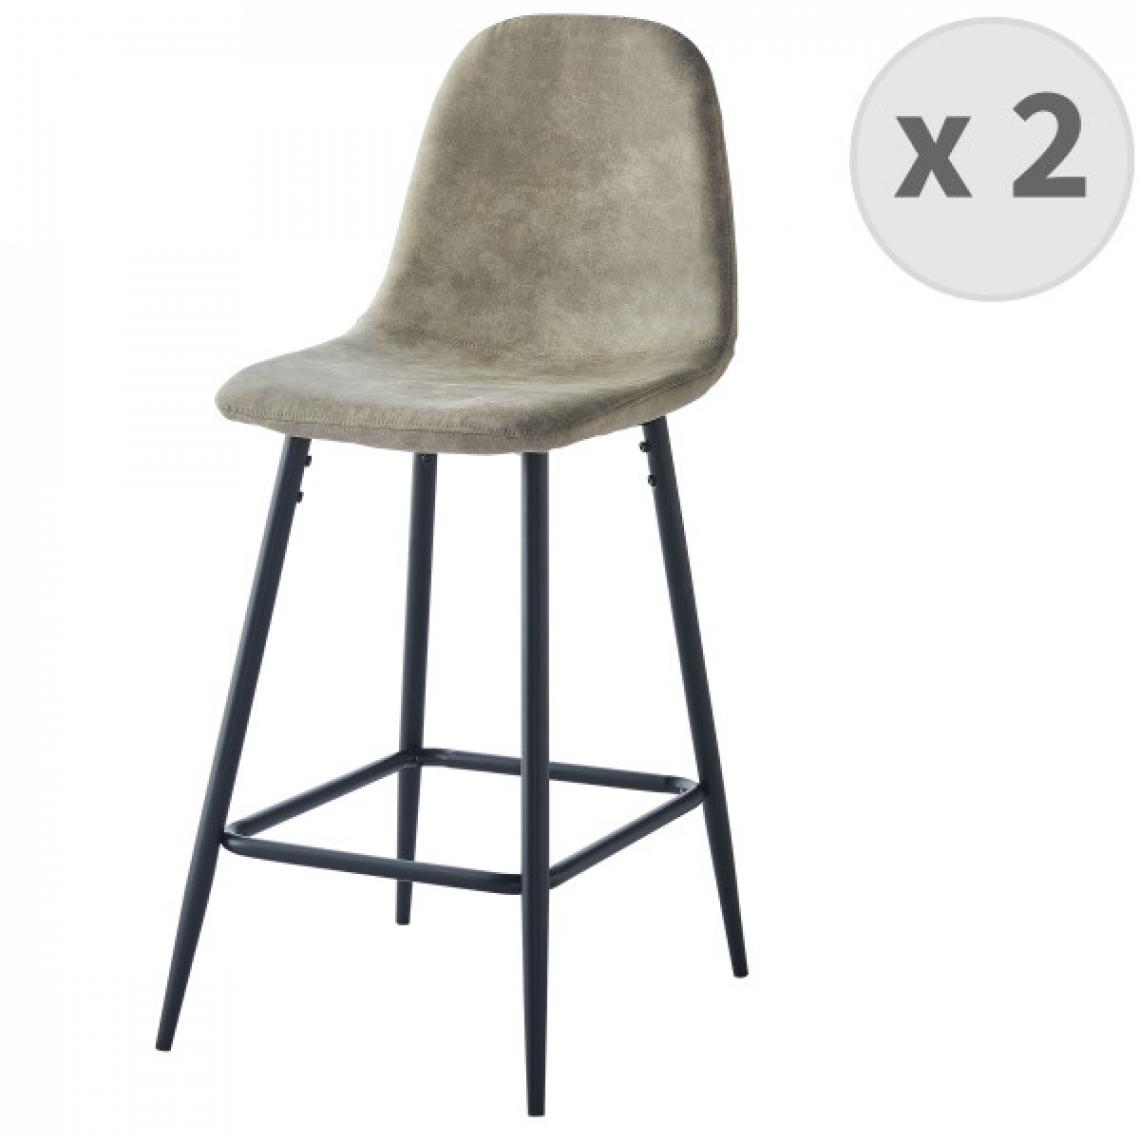 Moloo - MANCHESTER - Chaise de bar vintage microfibre marron clair pieds métal noir (x2) - Tabourets